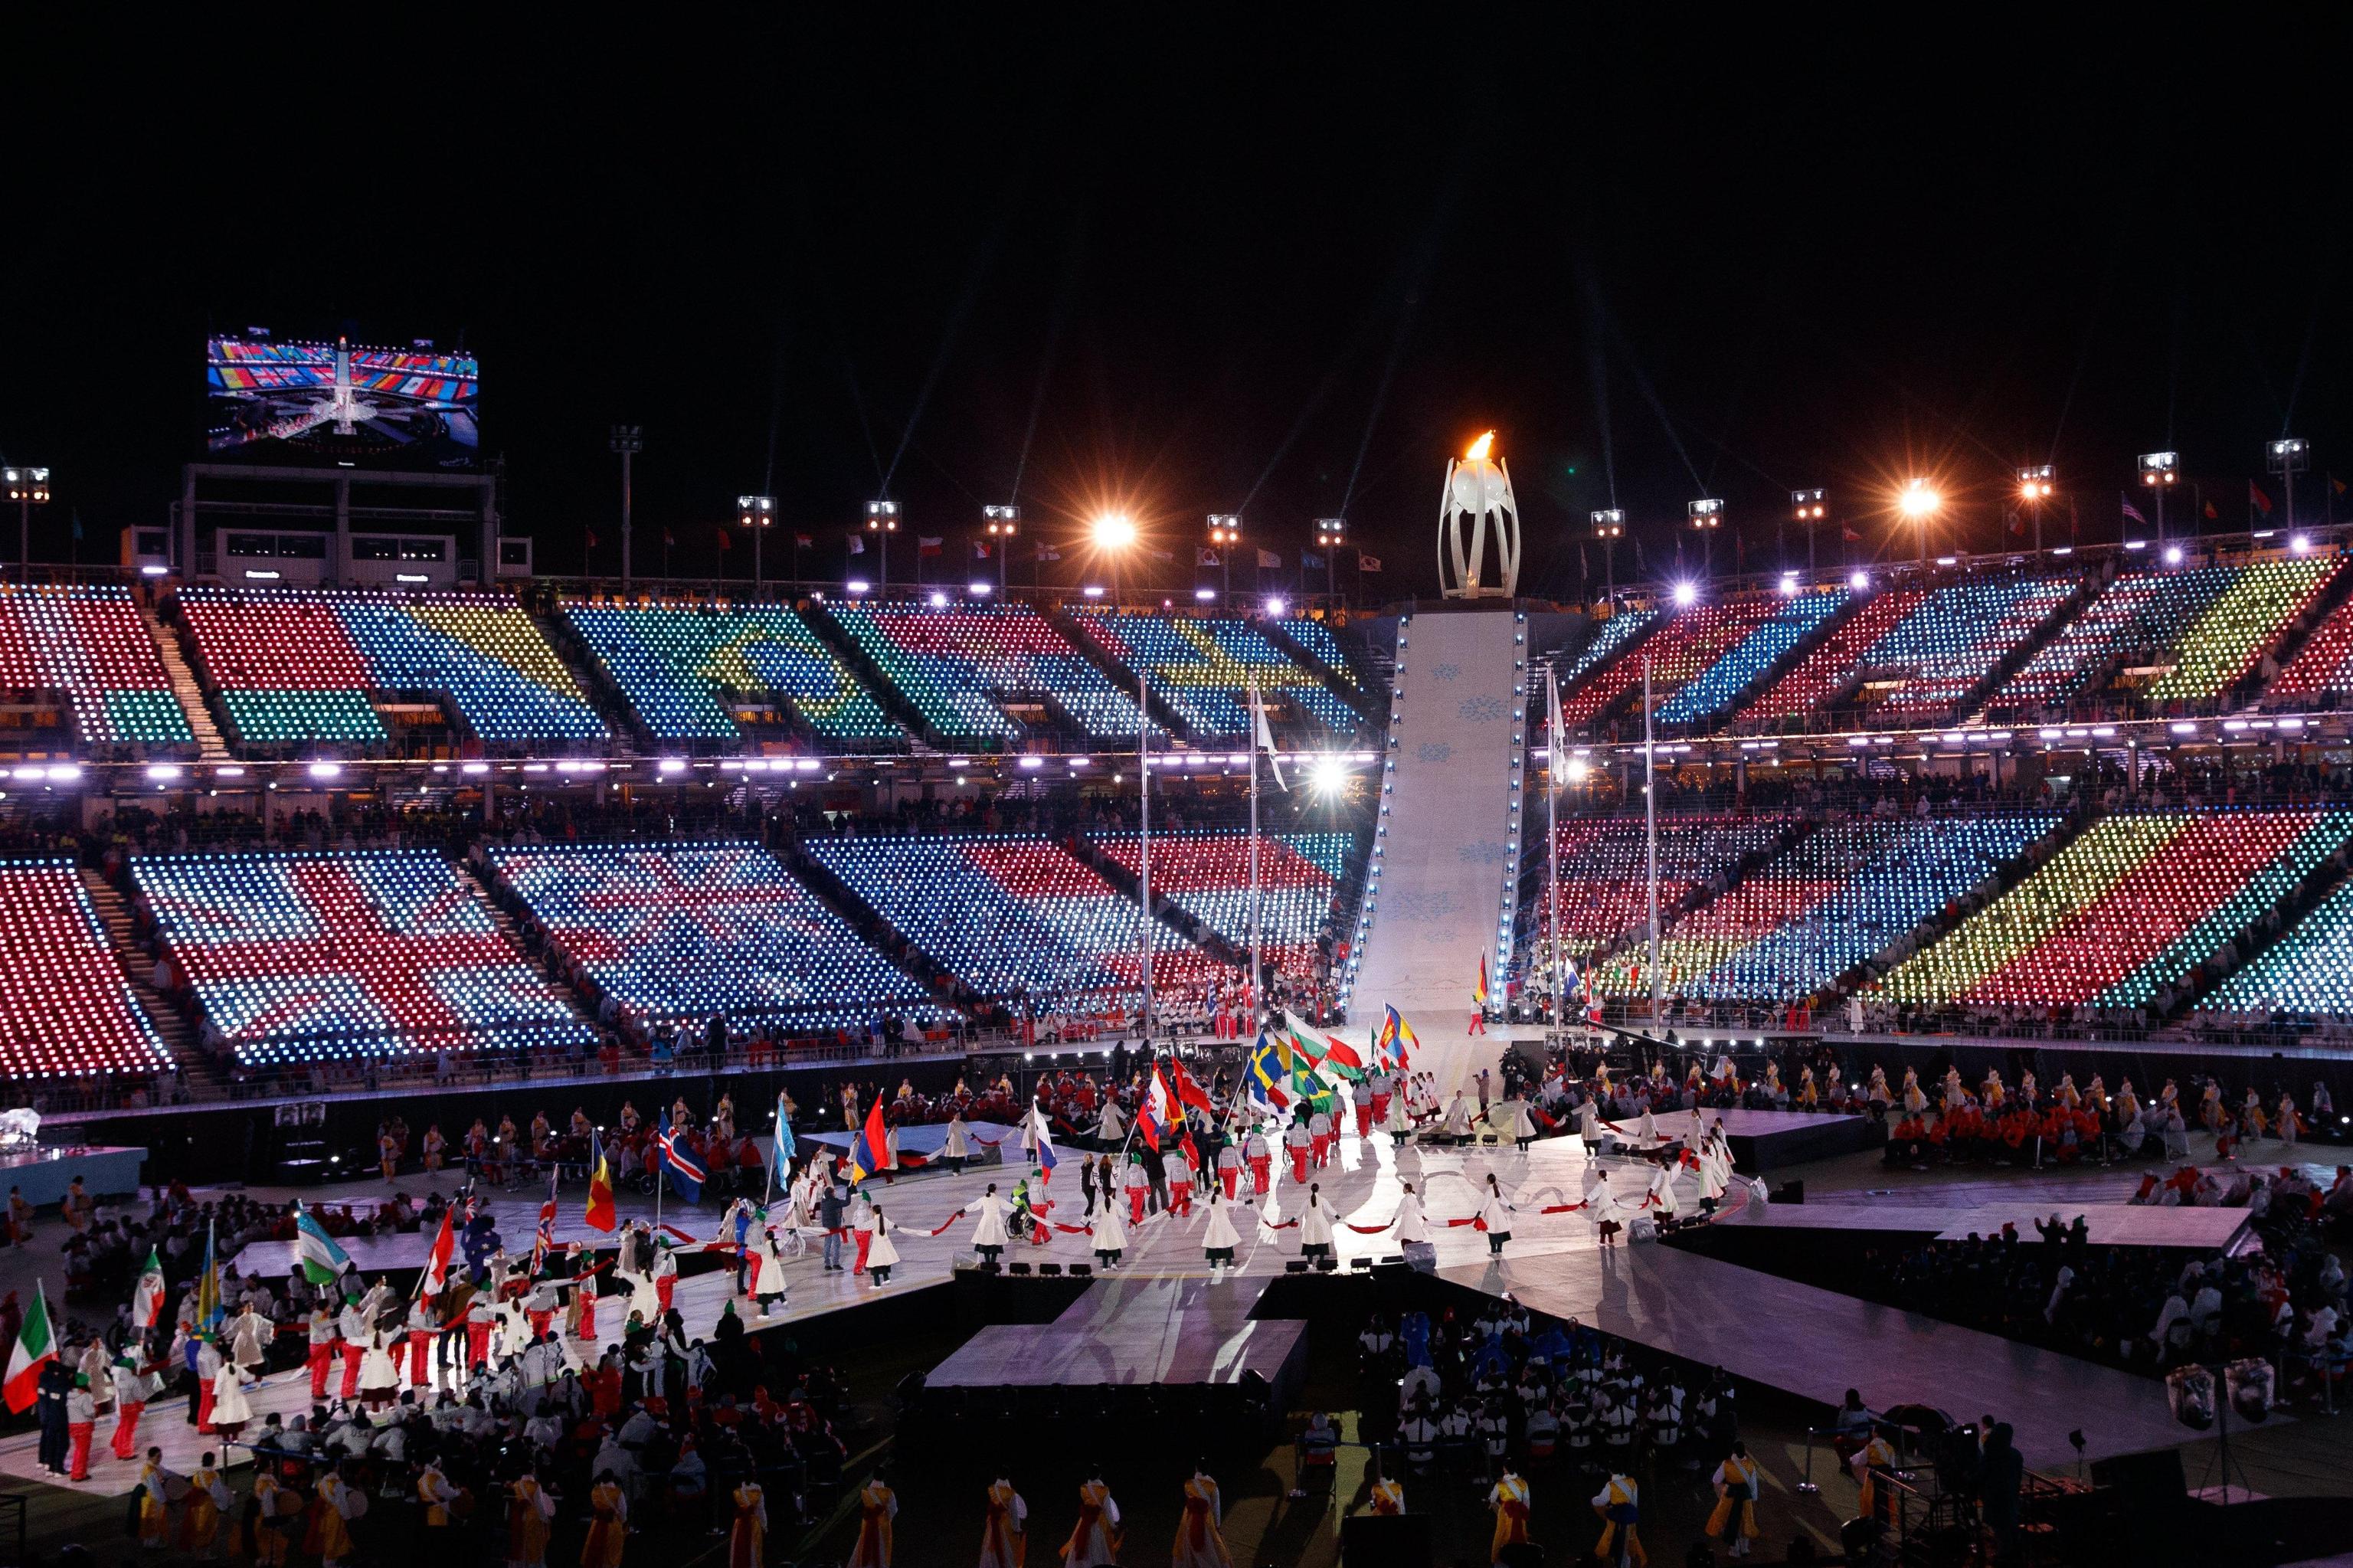 Lo stadio coperto dai colori delle bandiere dei diversi paesi